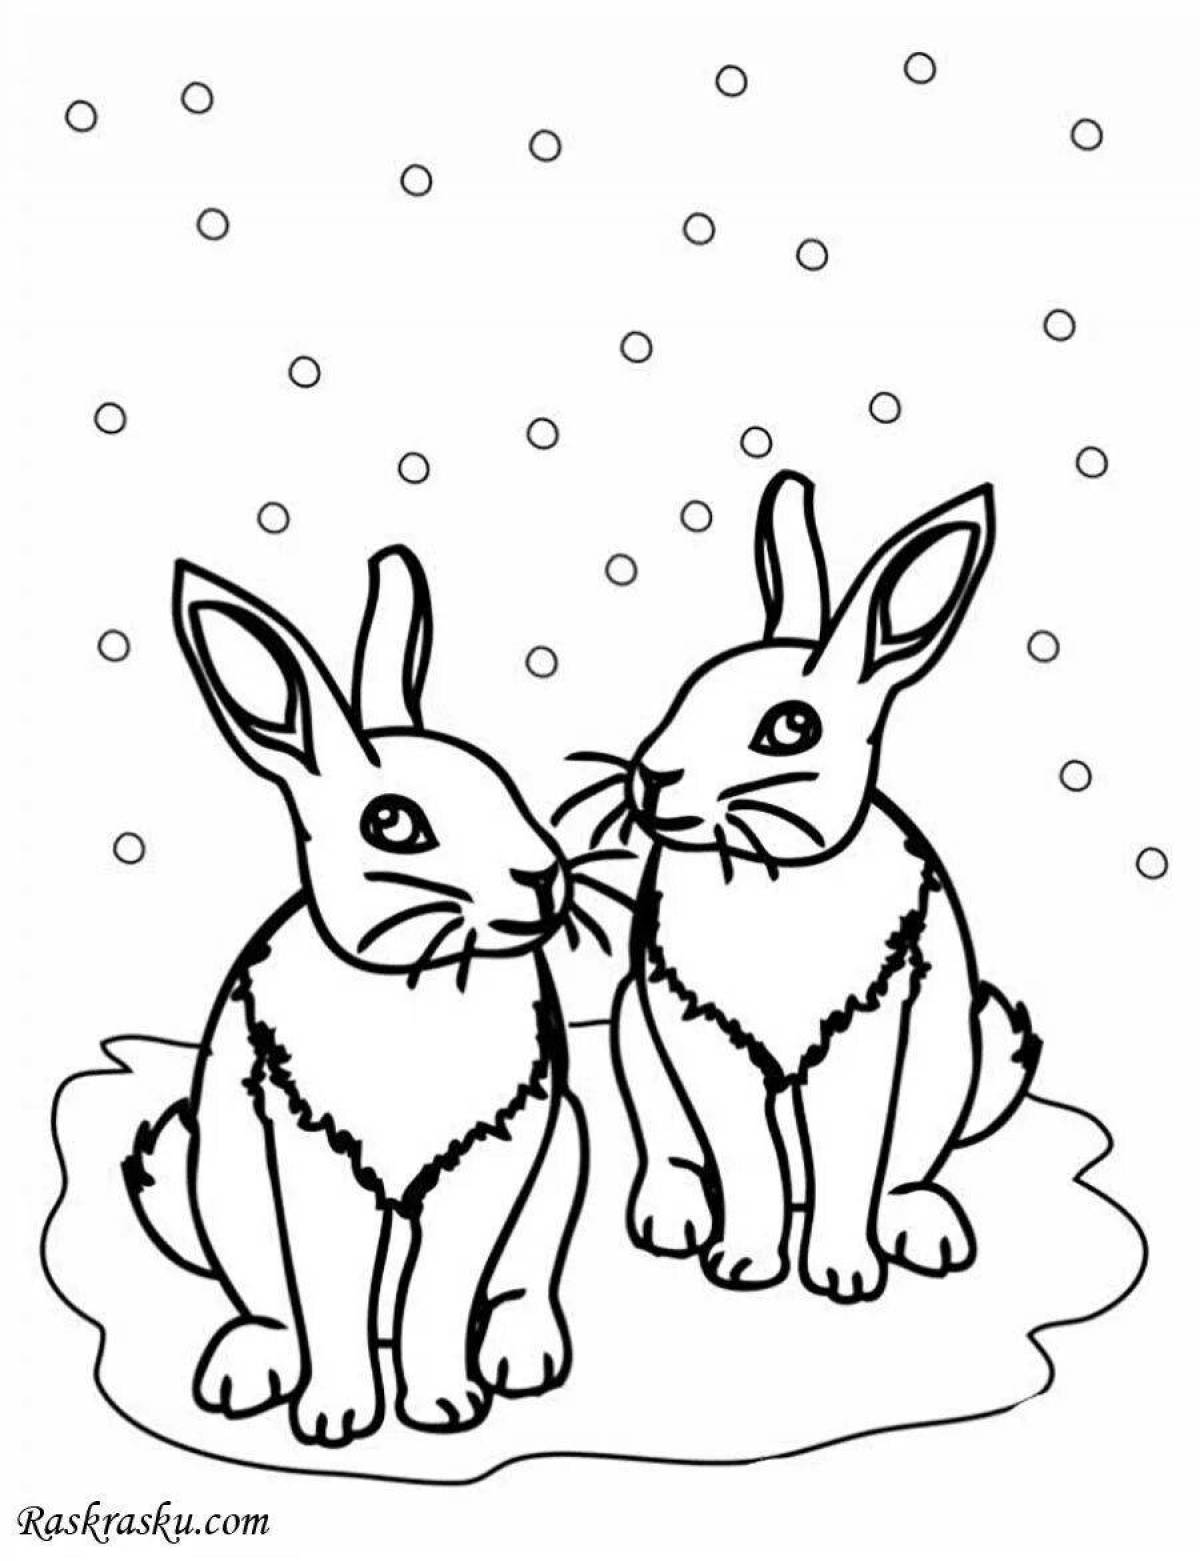 Cozy coloring rabbit in winter